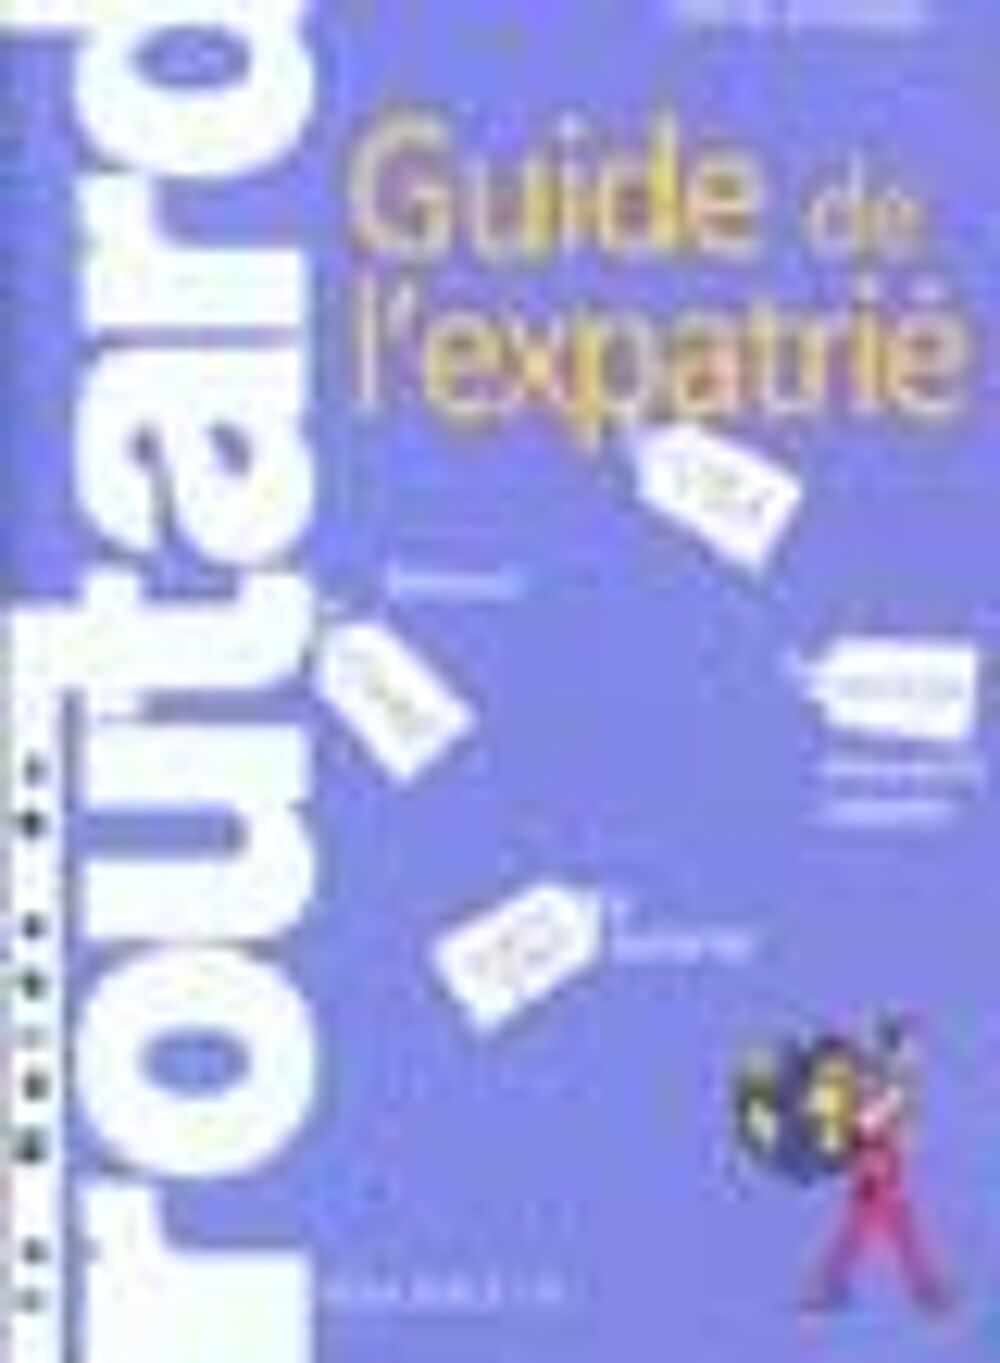 Guide de l'expatrie ; edition 2002-2003 Livres et BD